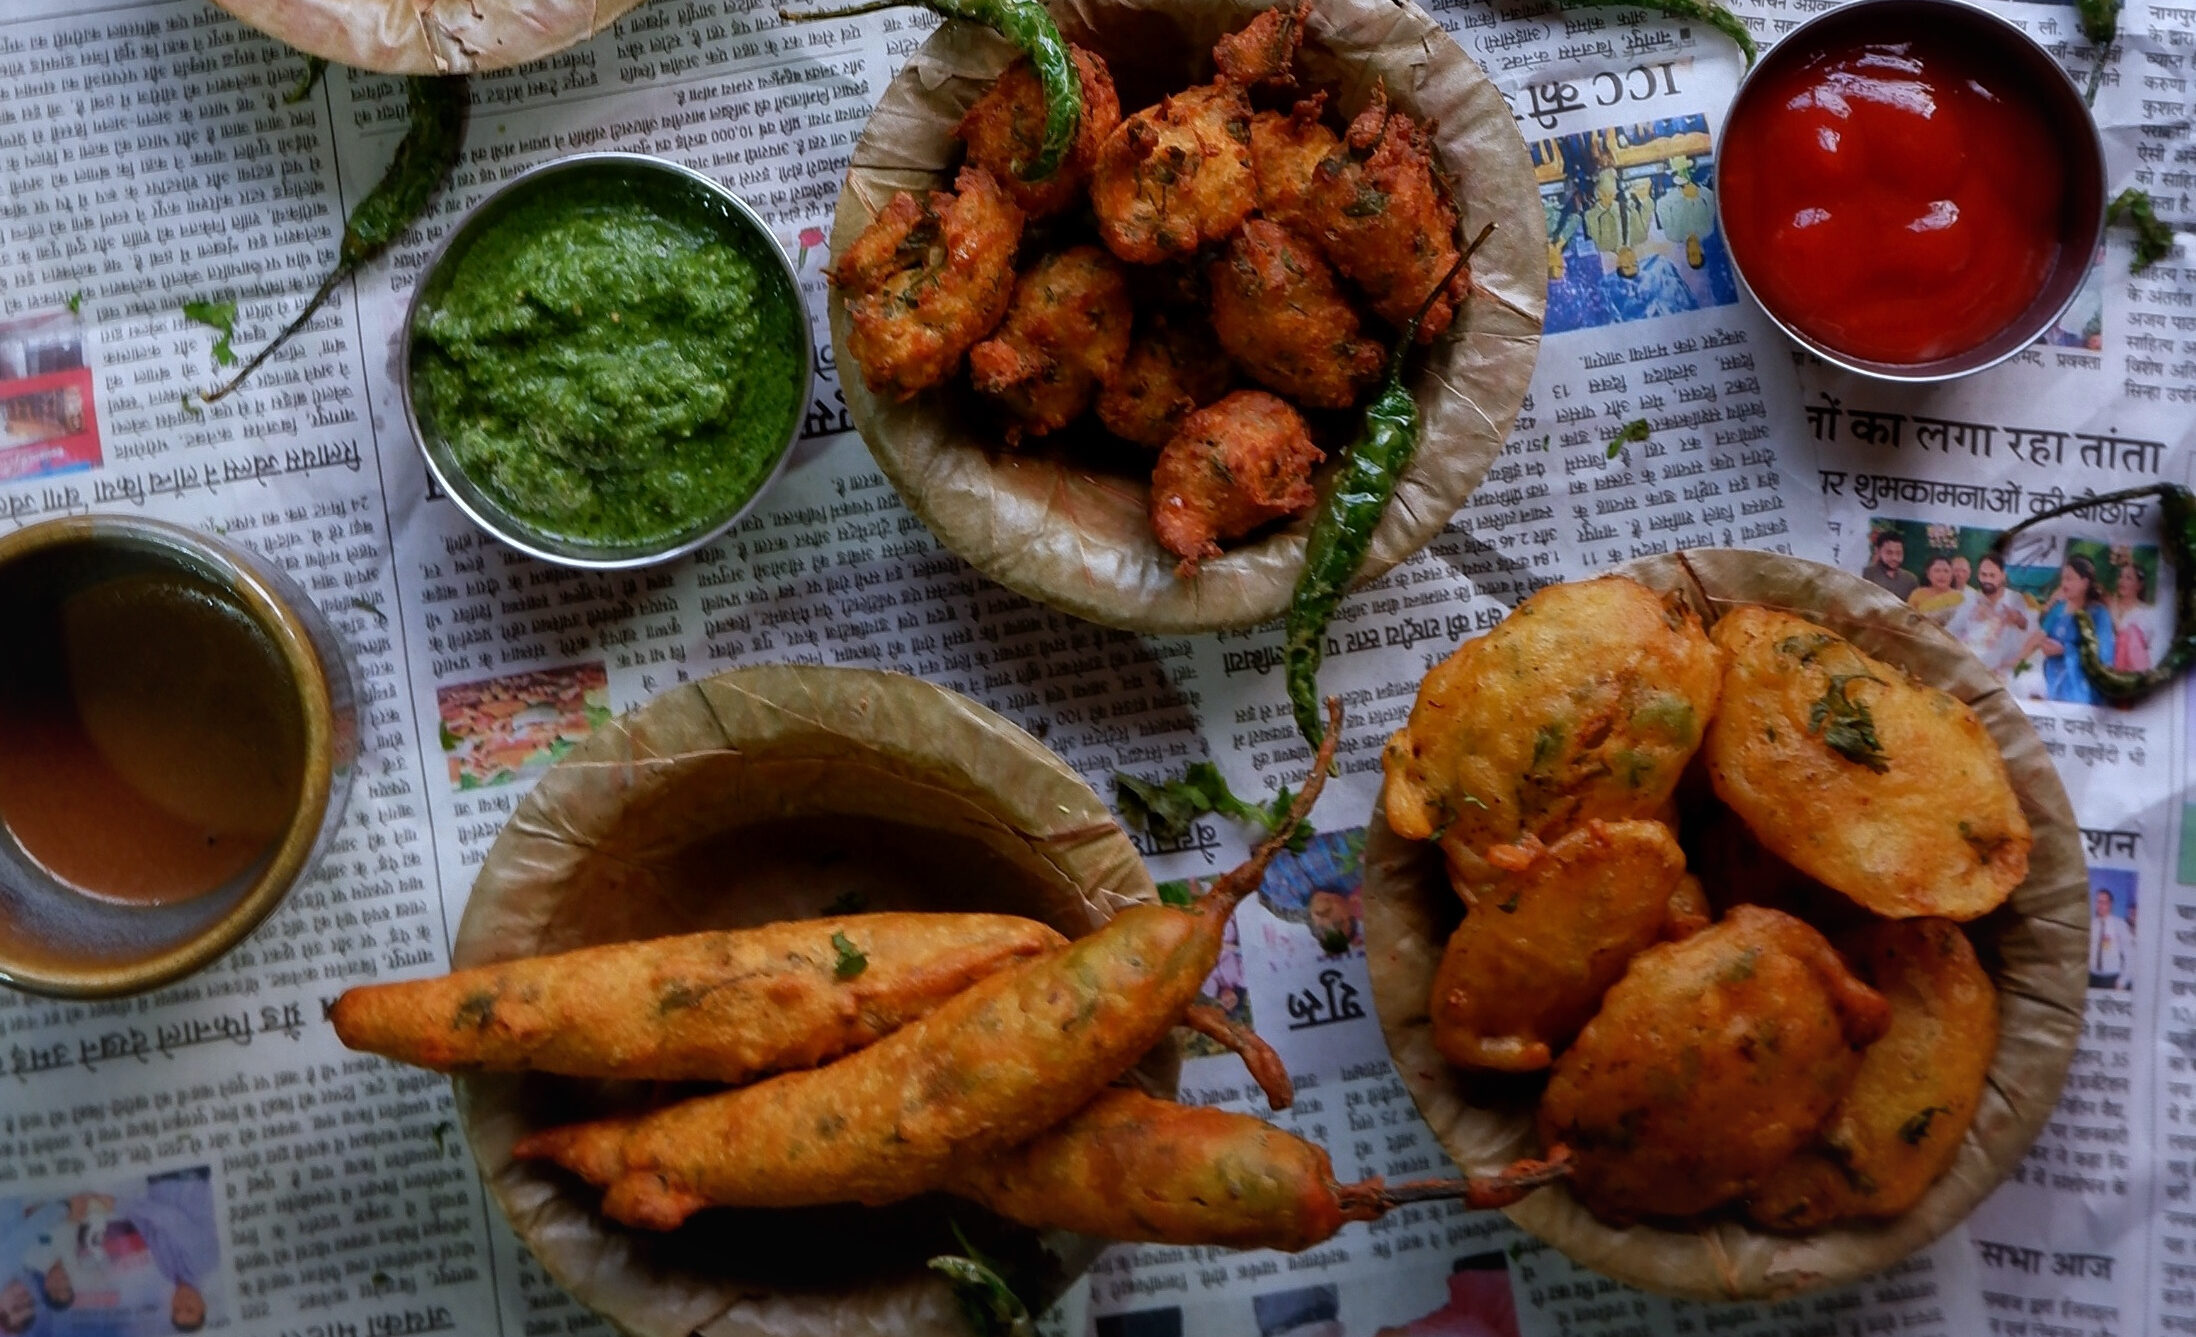 Gujrati Bhajiyas (Fritters for the rainy season)